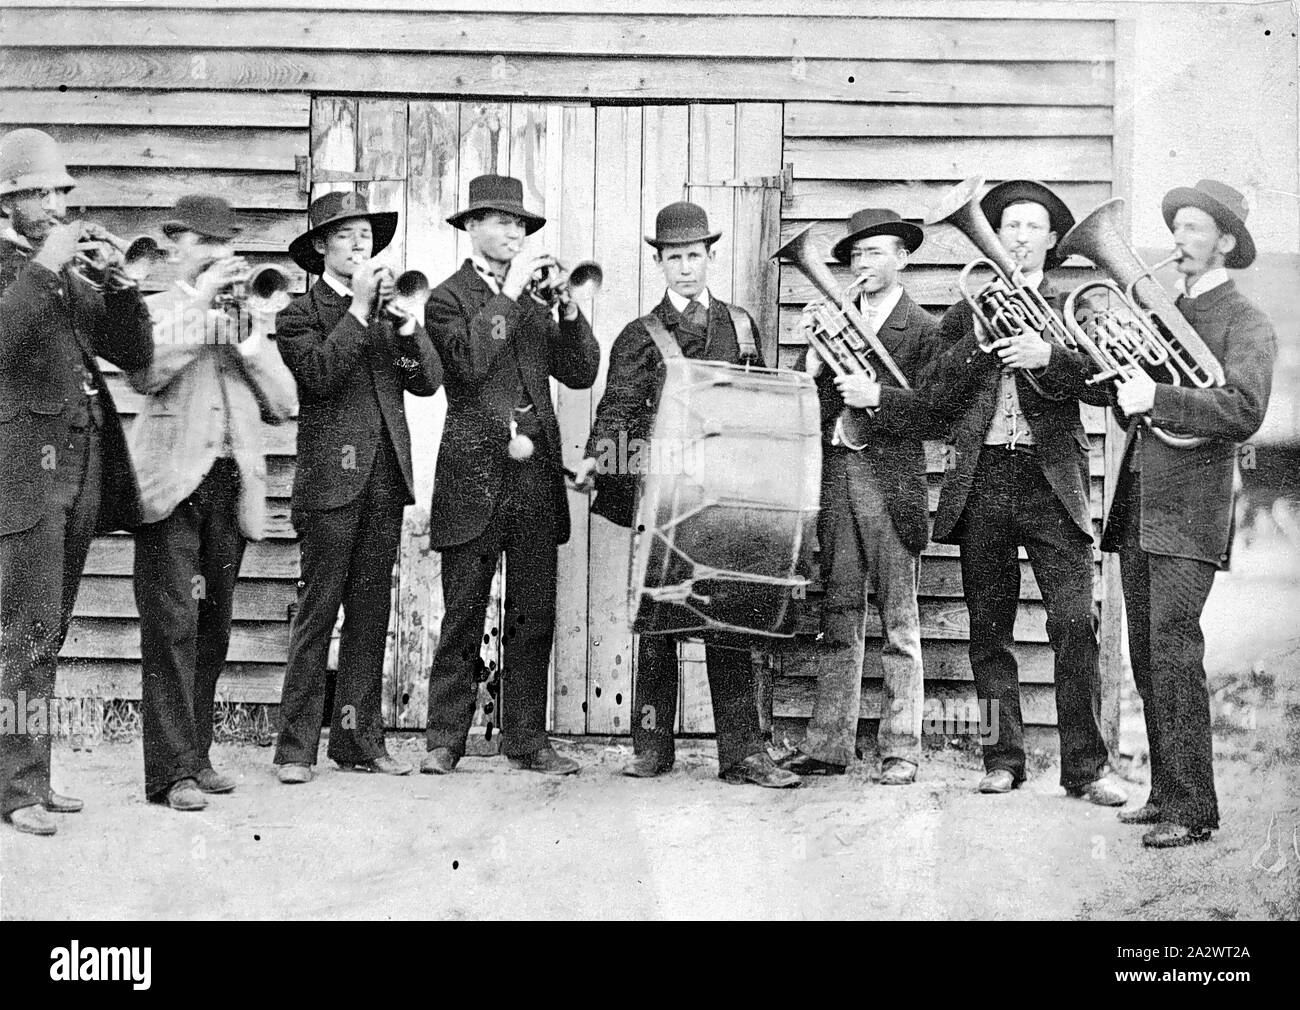 Negative - Hopetoun, Victoria, vor 1900, Mitglieder der Hopetoun Brass Band stand vor Ihrer Praxis Zimmer. Der Mann auf der linken Seite ist das Tragen eines Polizisten Helm Stockfoto